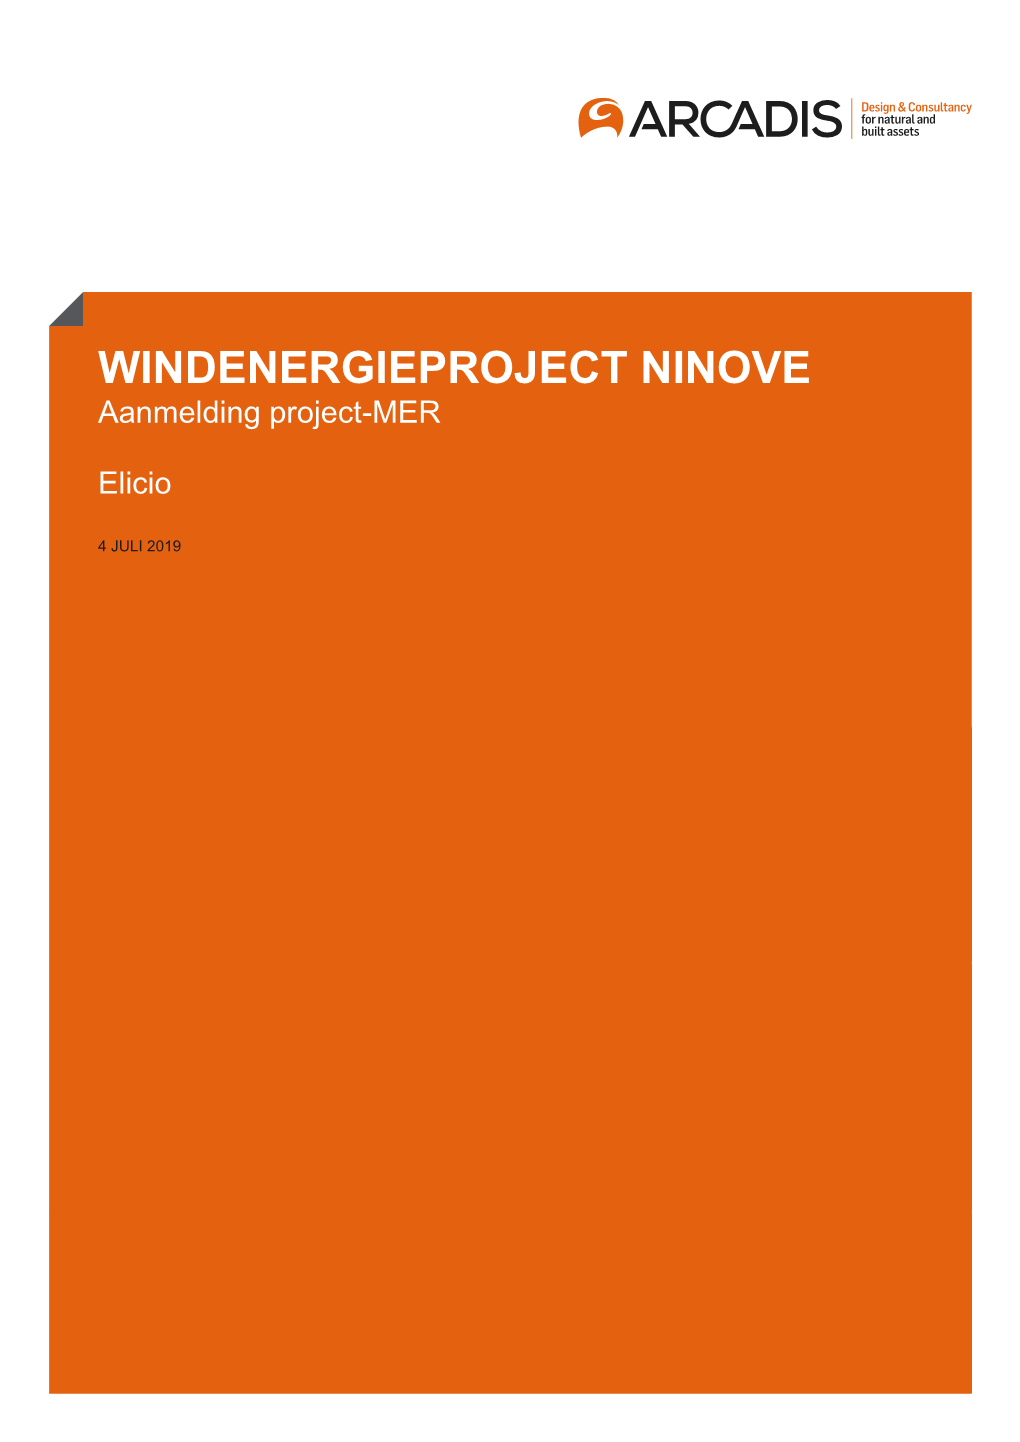 WINDENERGIEPROJECT NINOVE Aanmeldingwindenergieproject Project-MER NINOVE Aanmelding Project-MER Elicio Elicio